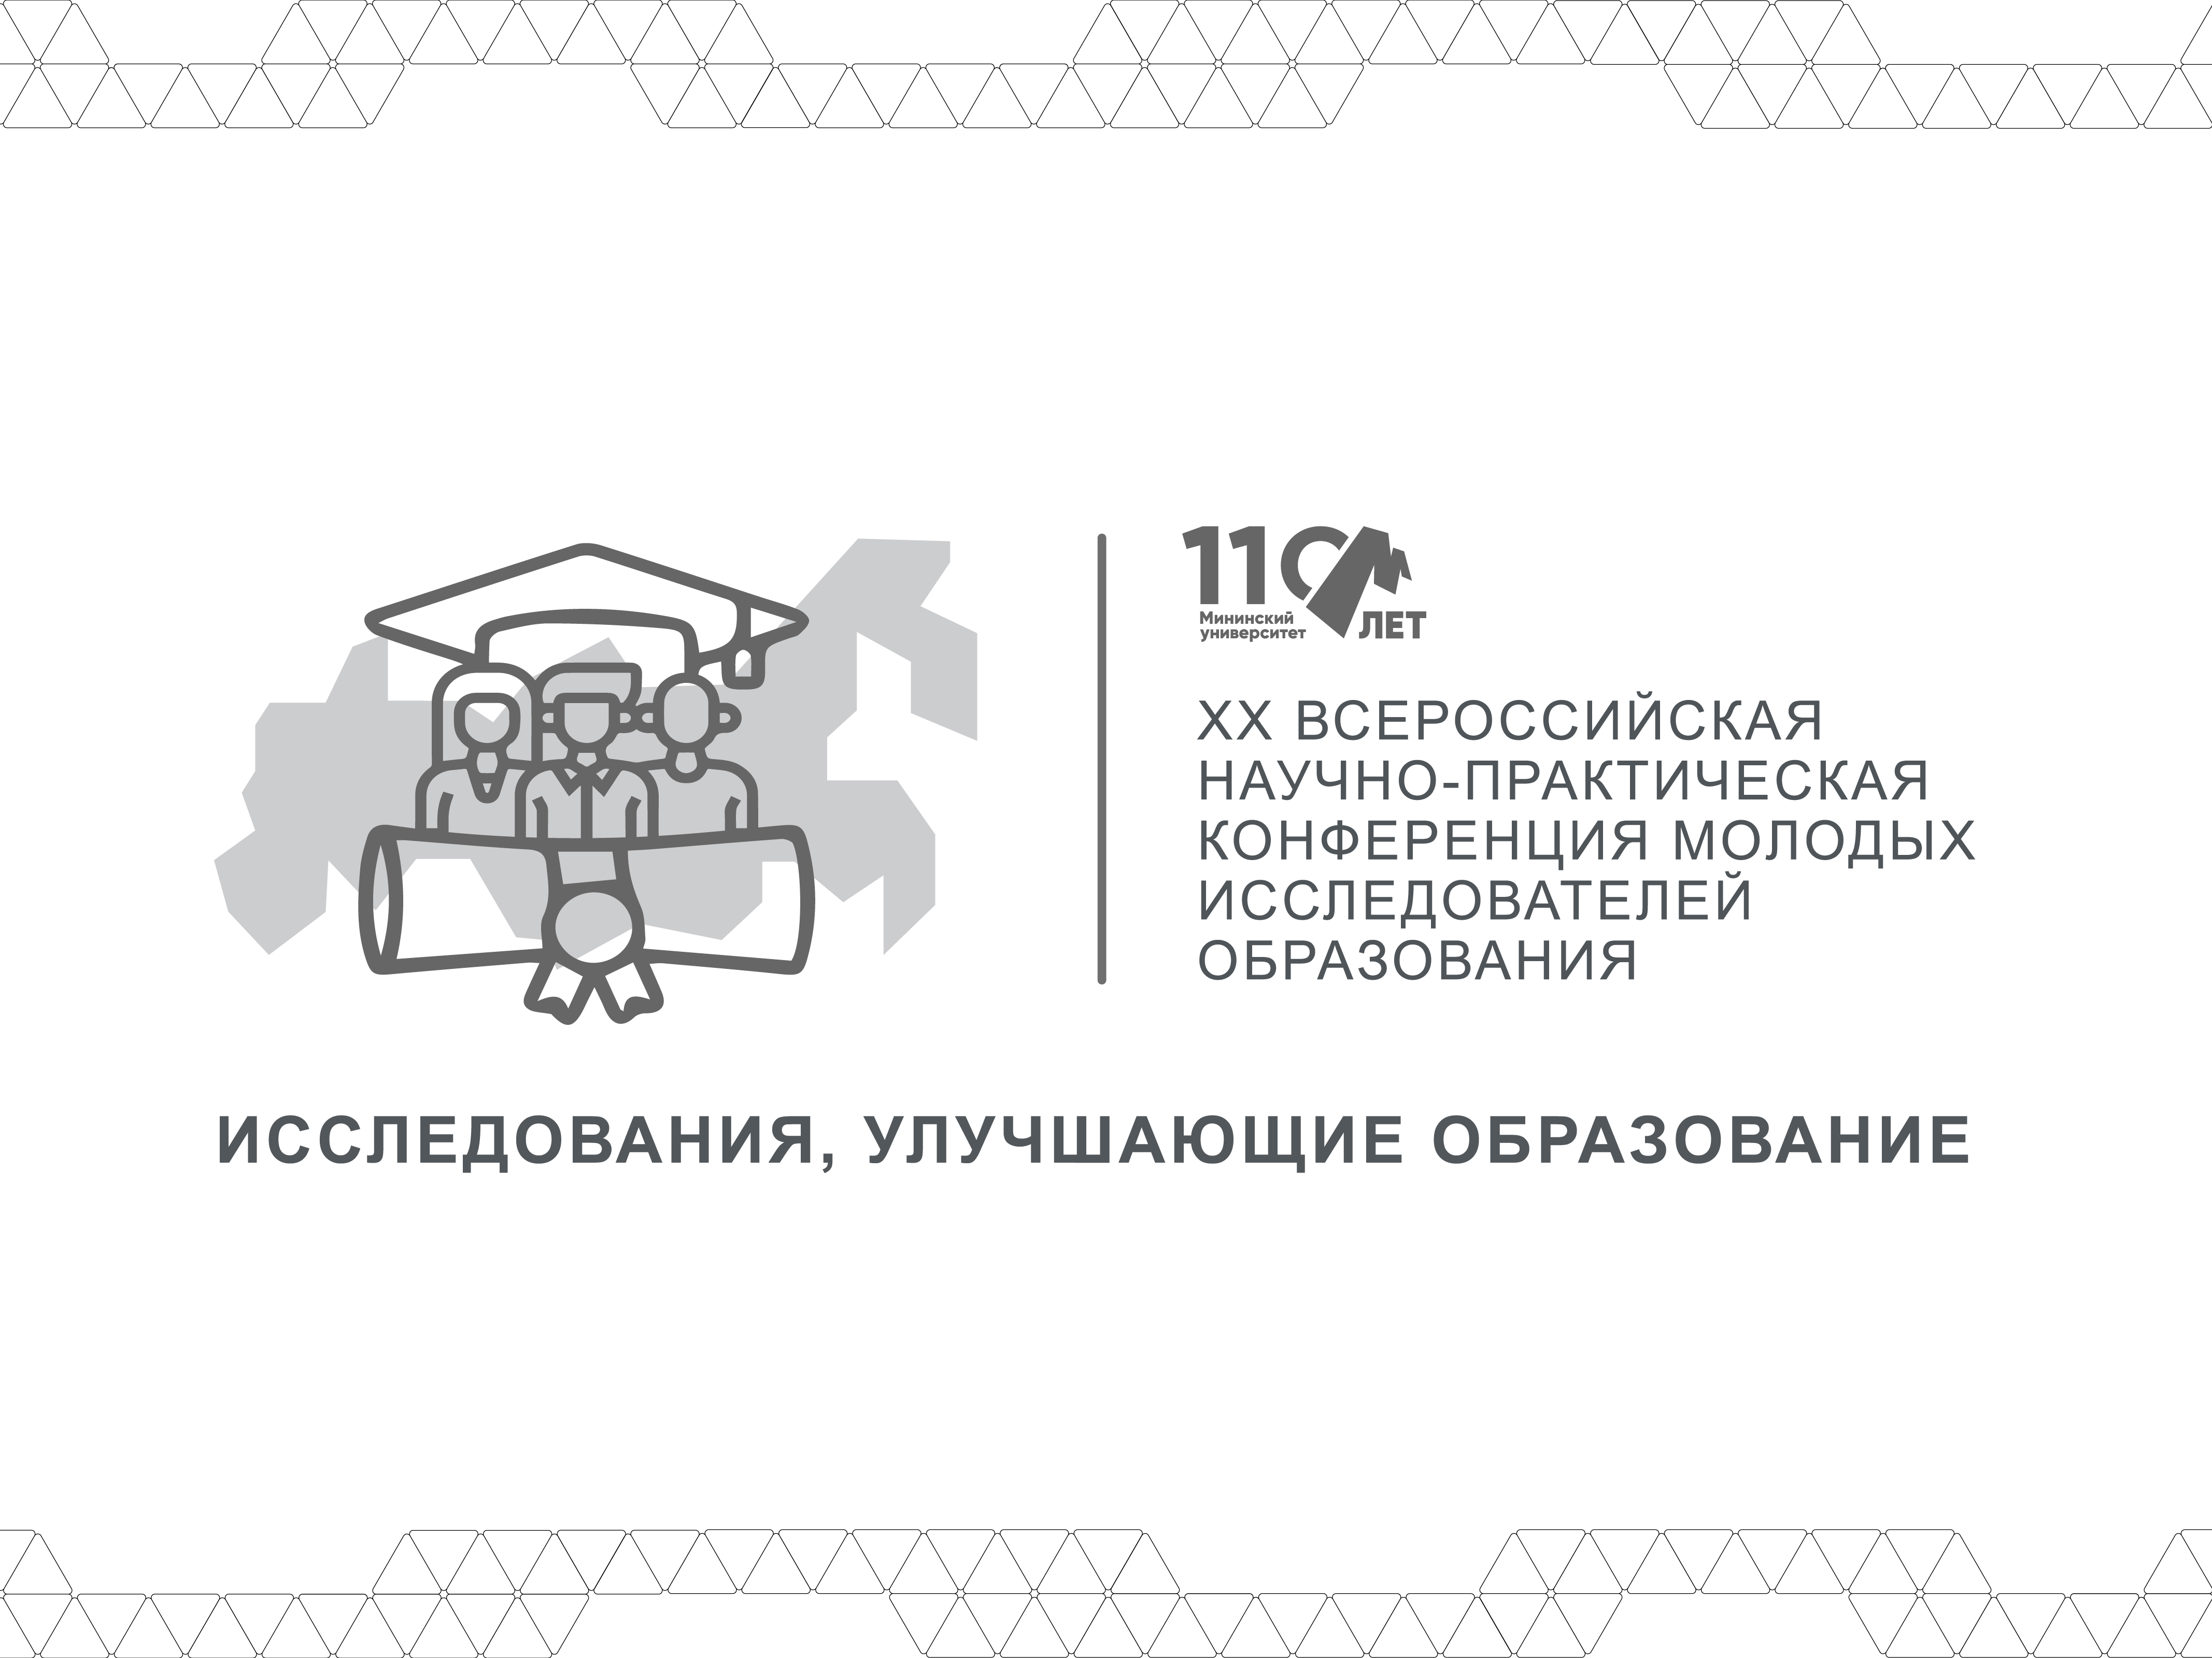 Мининский университет проведет XX Всероссийскую научно-практическую конференцию молодых исследователей образования «Исследования, улучшающие образование»